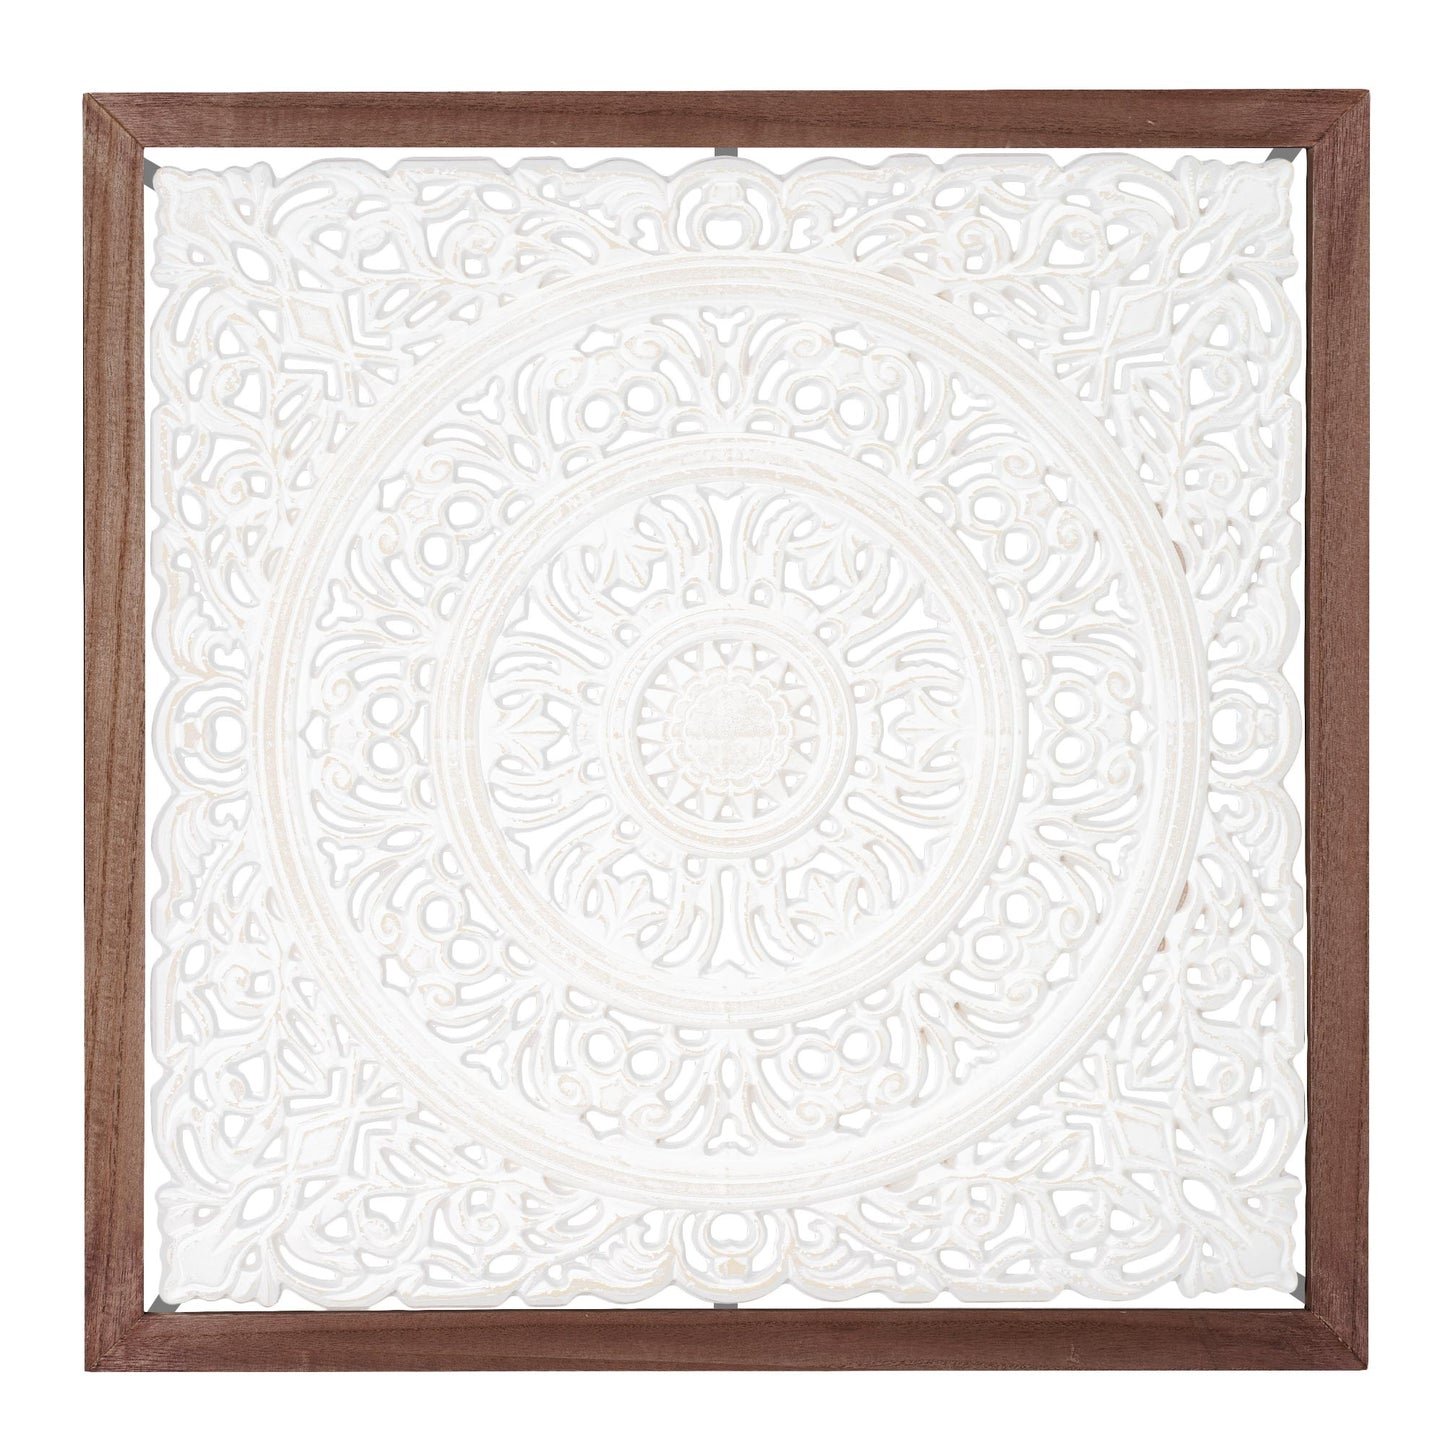 Floral Mandala White Square Framed Medallion Boho Wall Art, 24.5"x24.5"